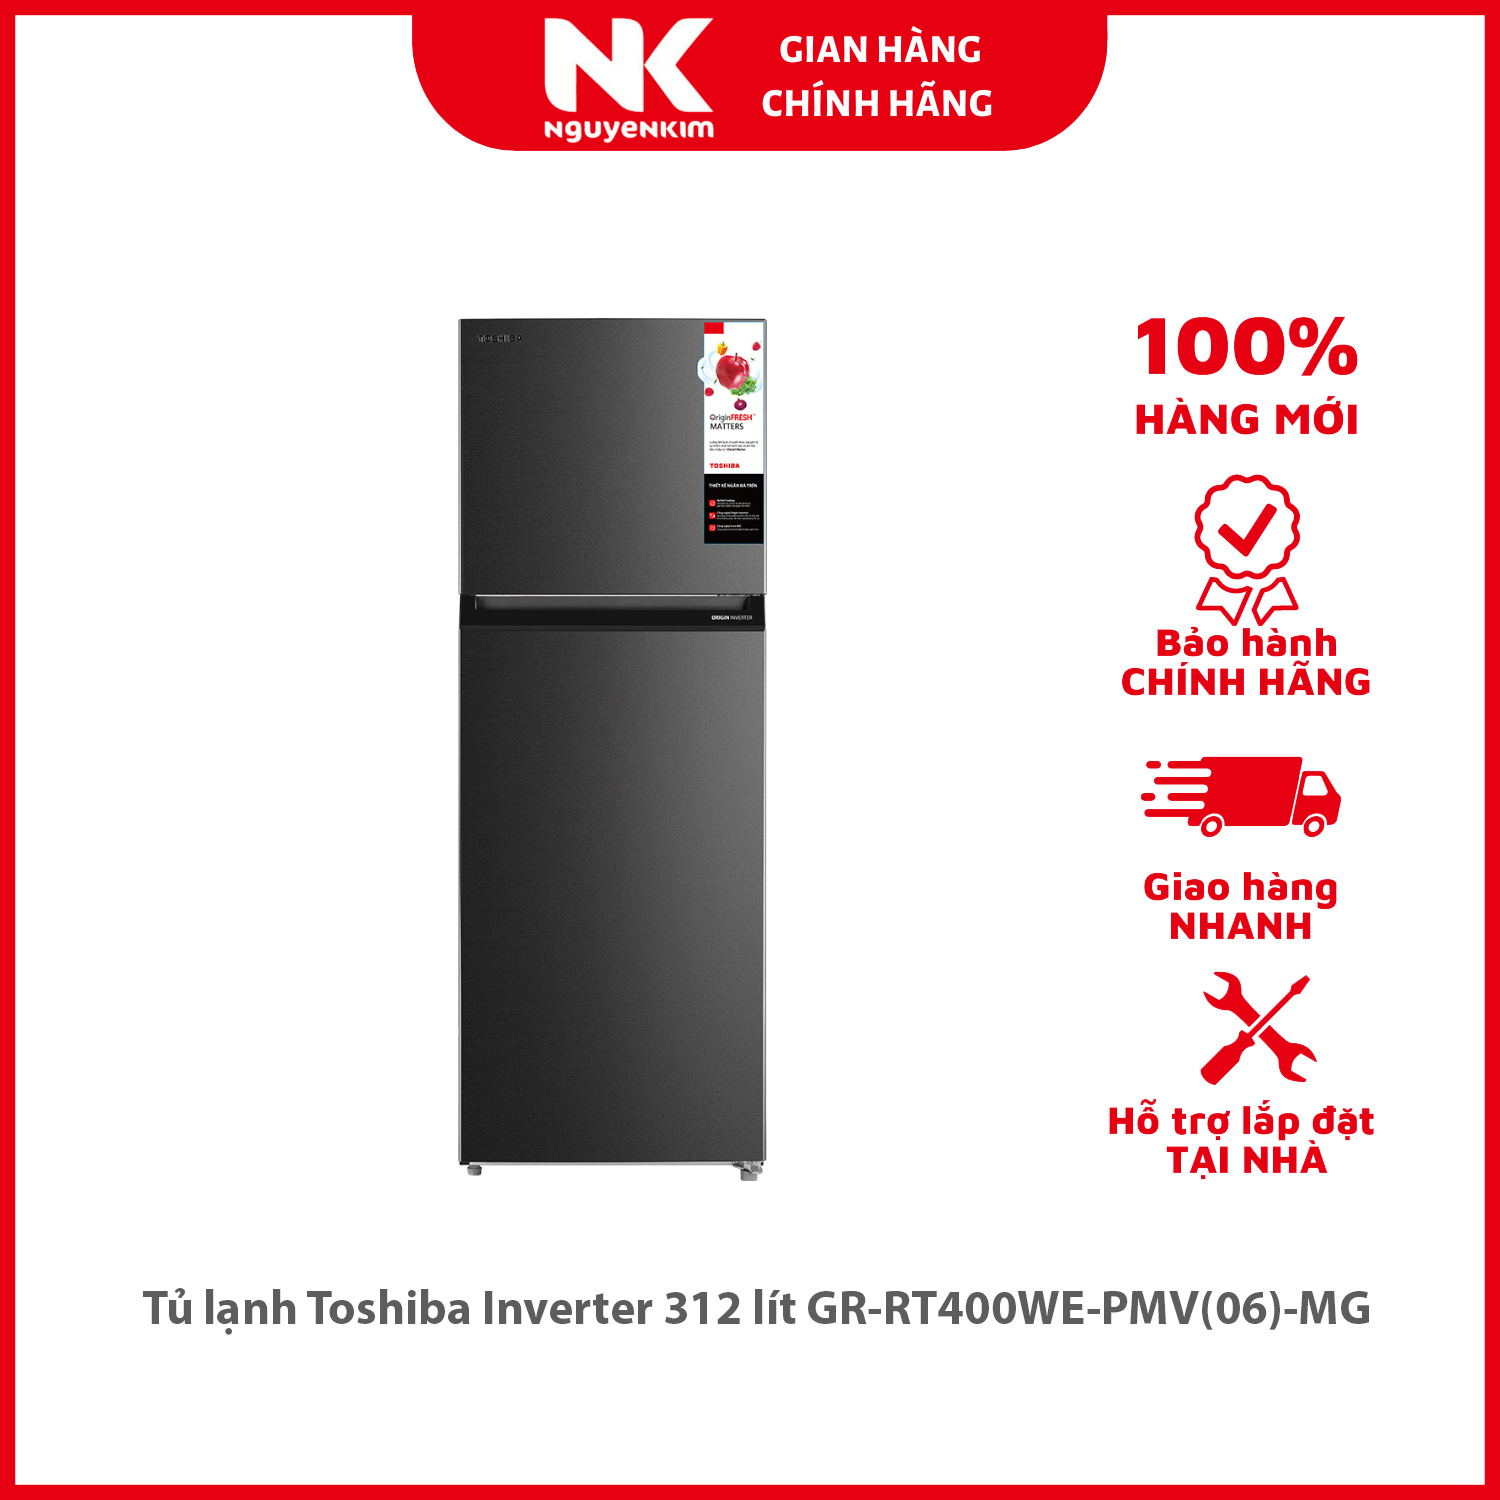 Tủ lạnh Toshiba Inverter 312 lít GR-RT400WE-PMV(06)-MG - Hàng chính hãng [Giao hàng toàn quốc]